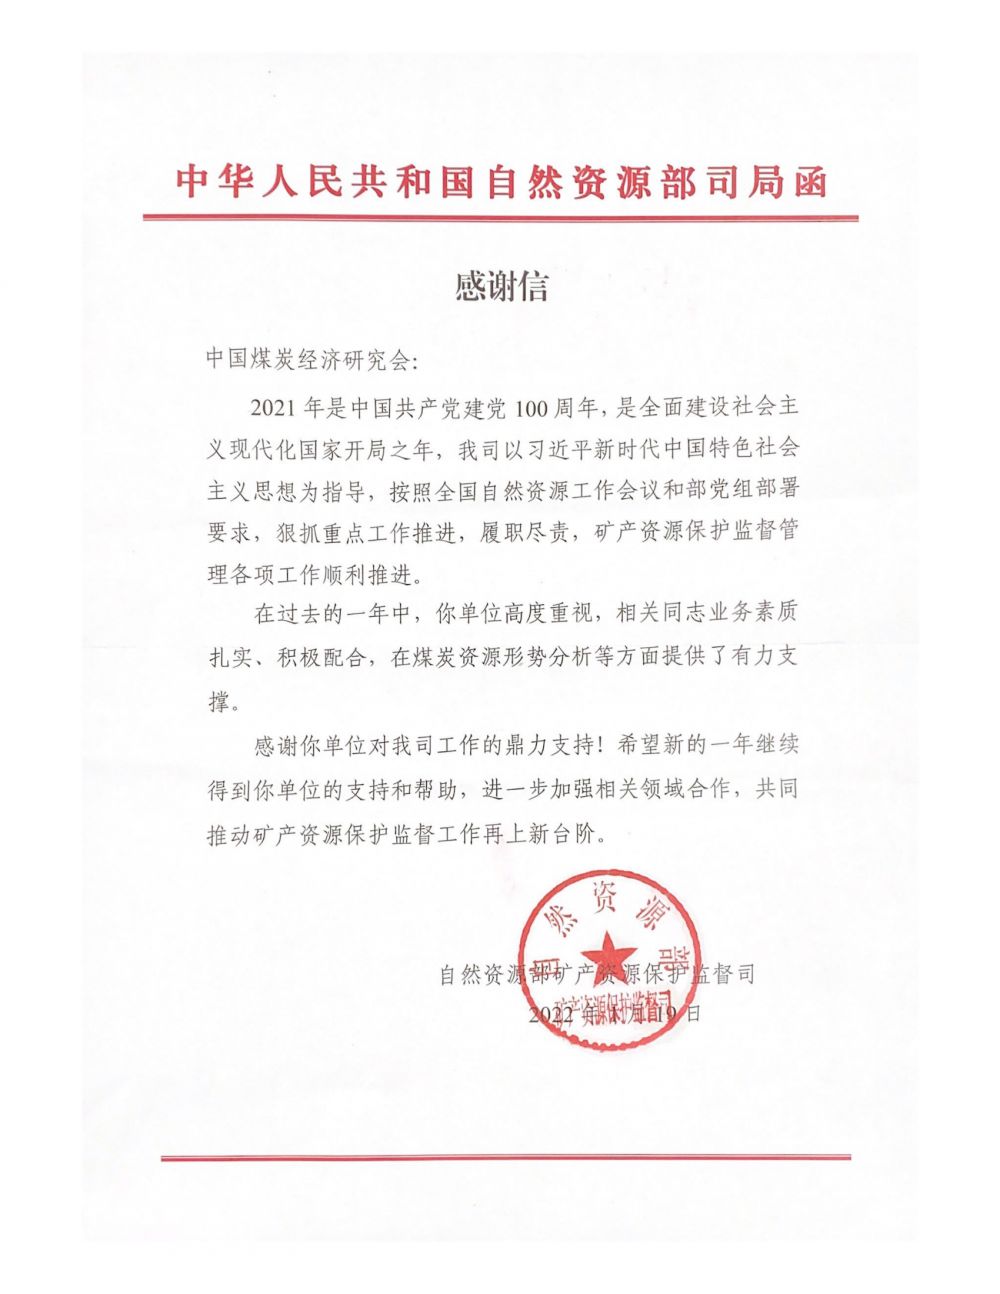 中华人民共和国自然资源部司局函_00.png